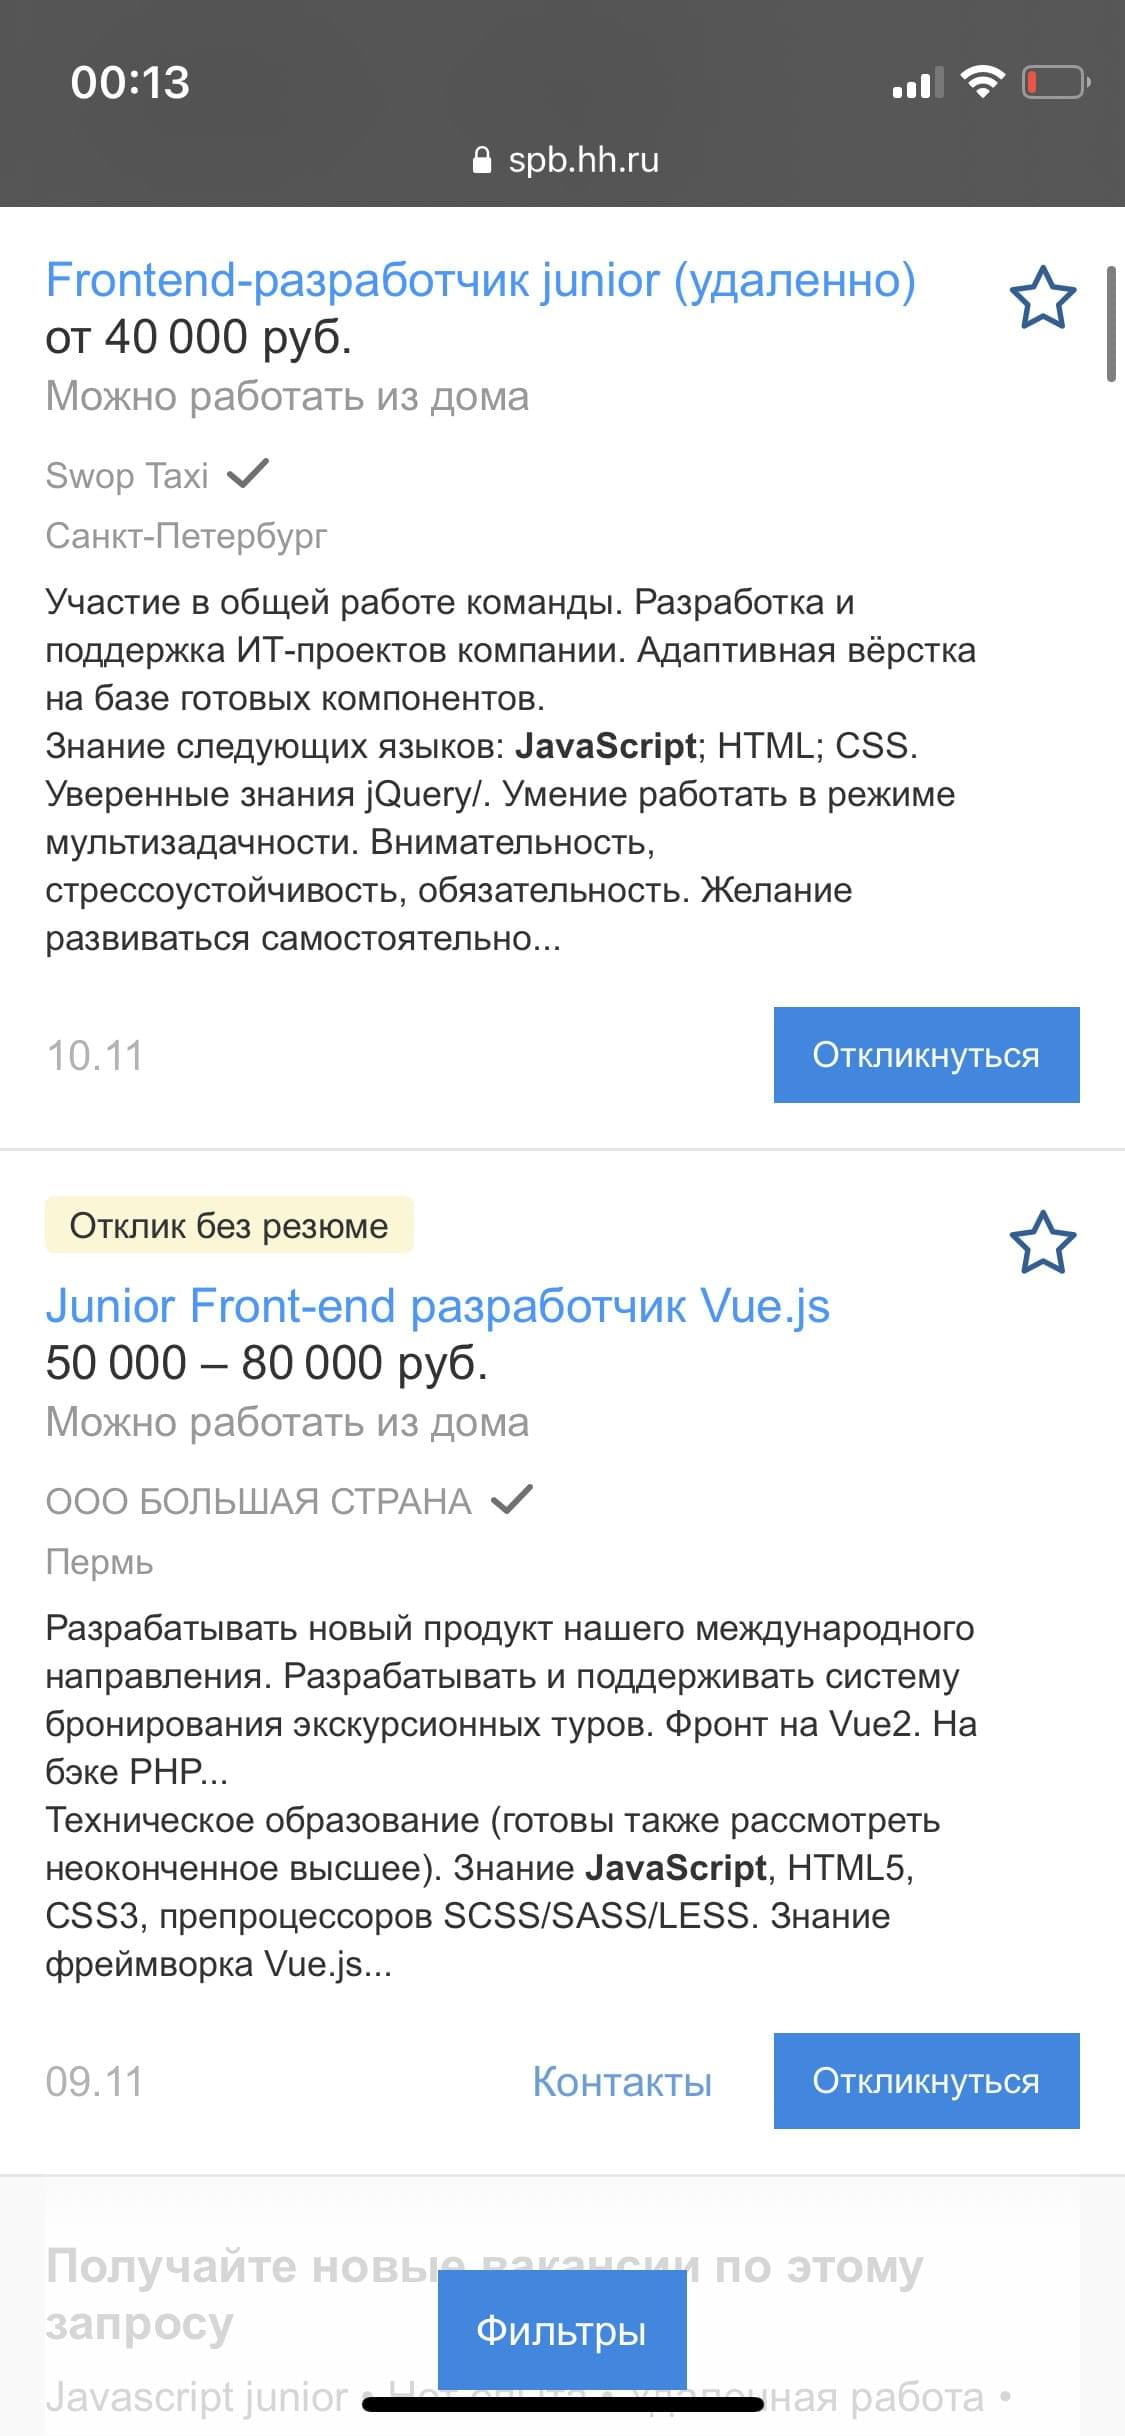 Скрин сайта hh.ru, с поиском по вакансии верстальщик